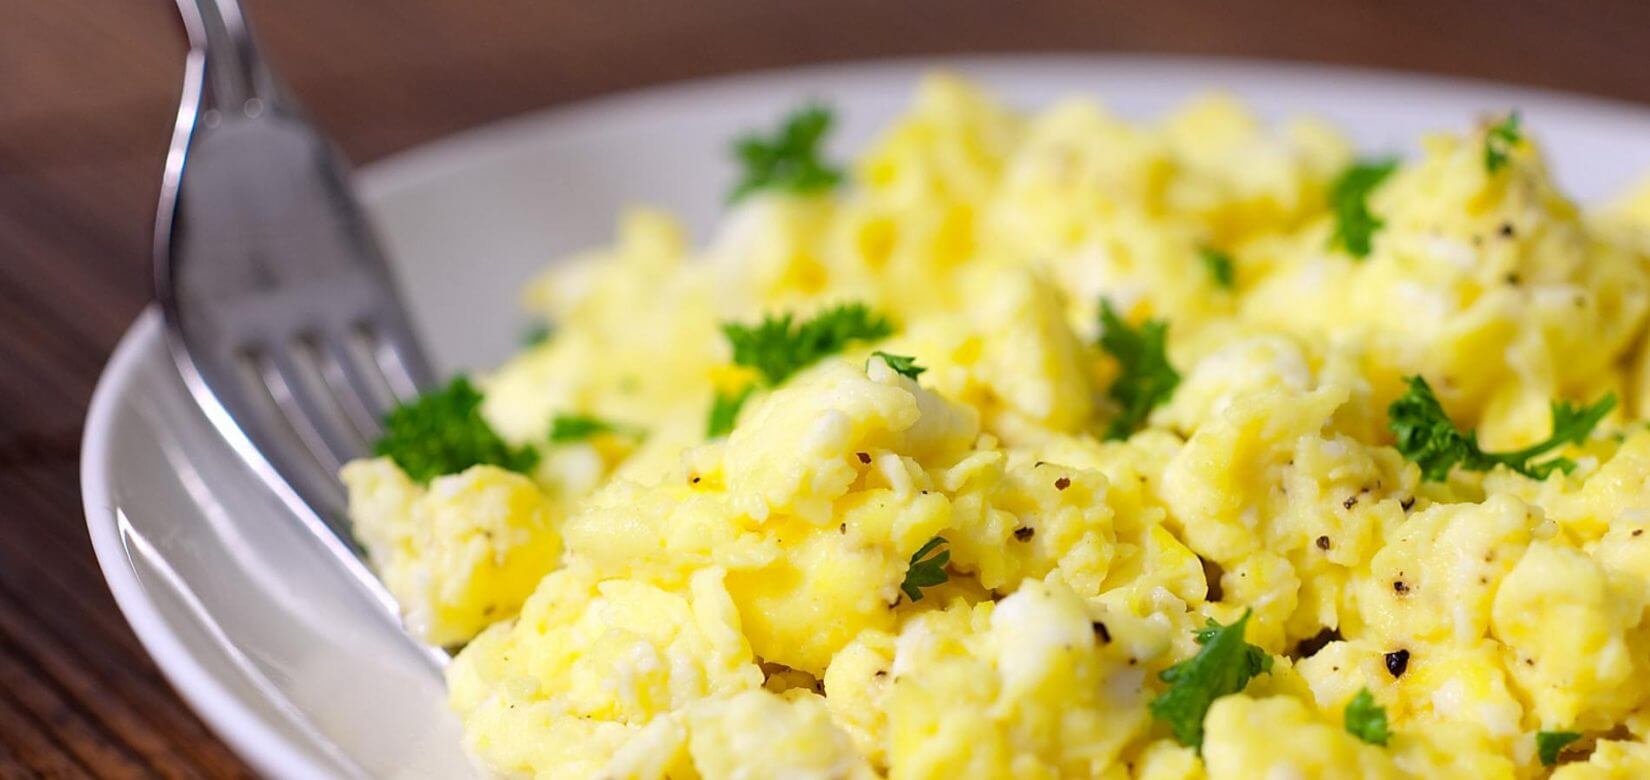 Πώς θα φτιάξετε τα τέλεια scrambled eggs, για ένα τέλειο και υγιεινό οικογενειακό πρωινό!